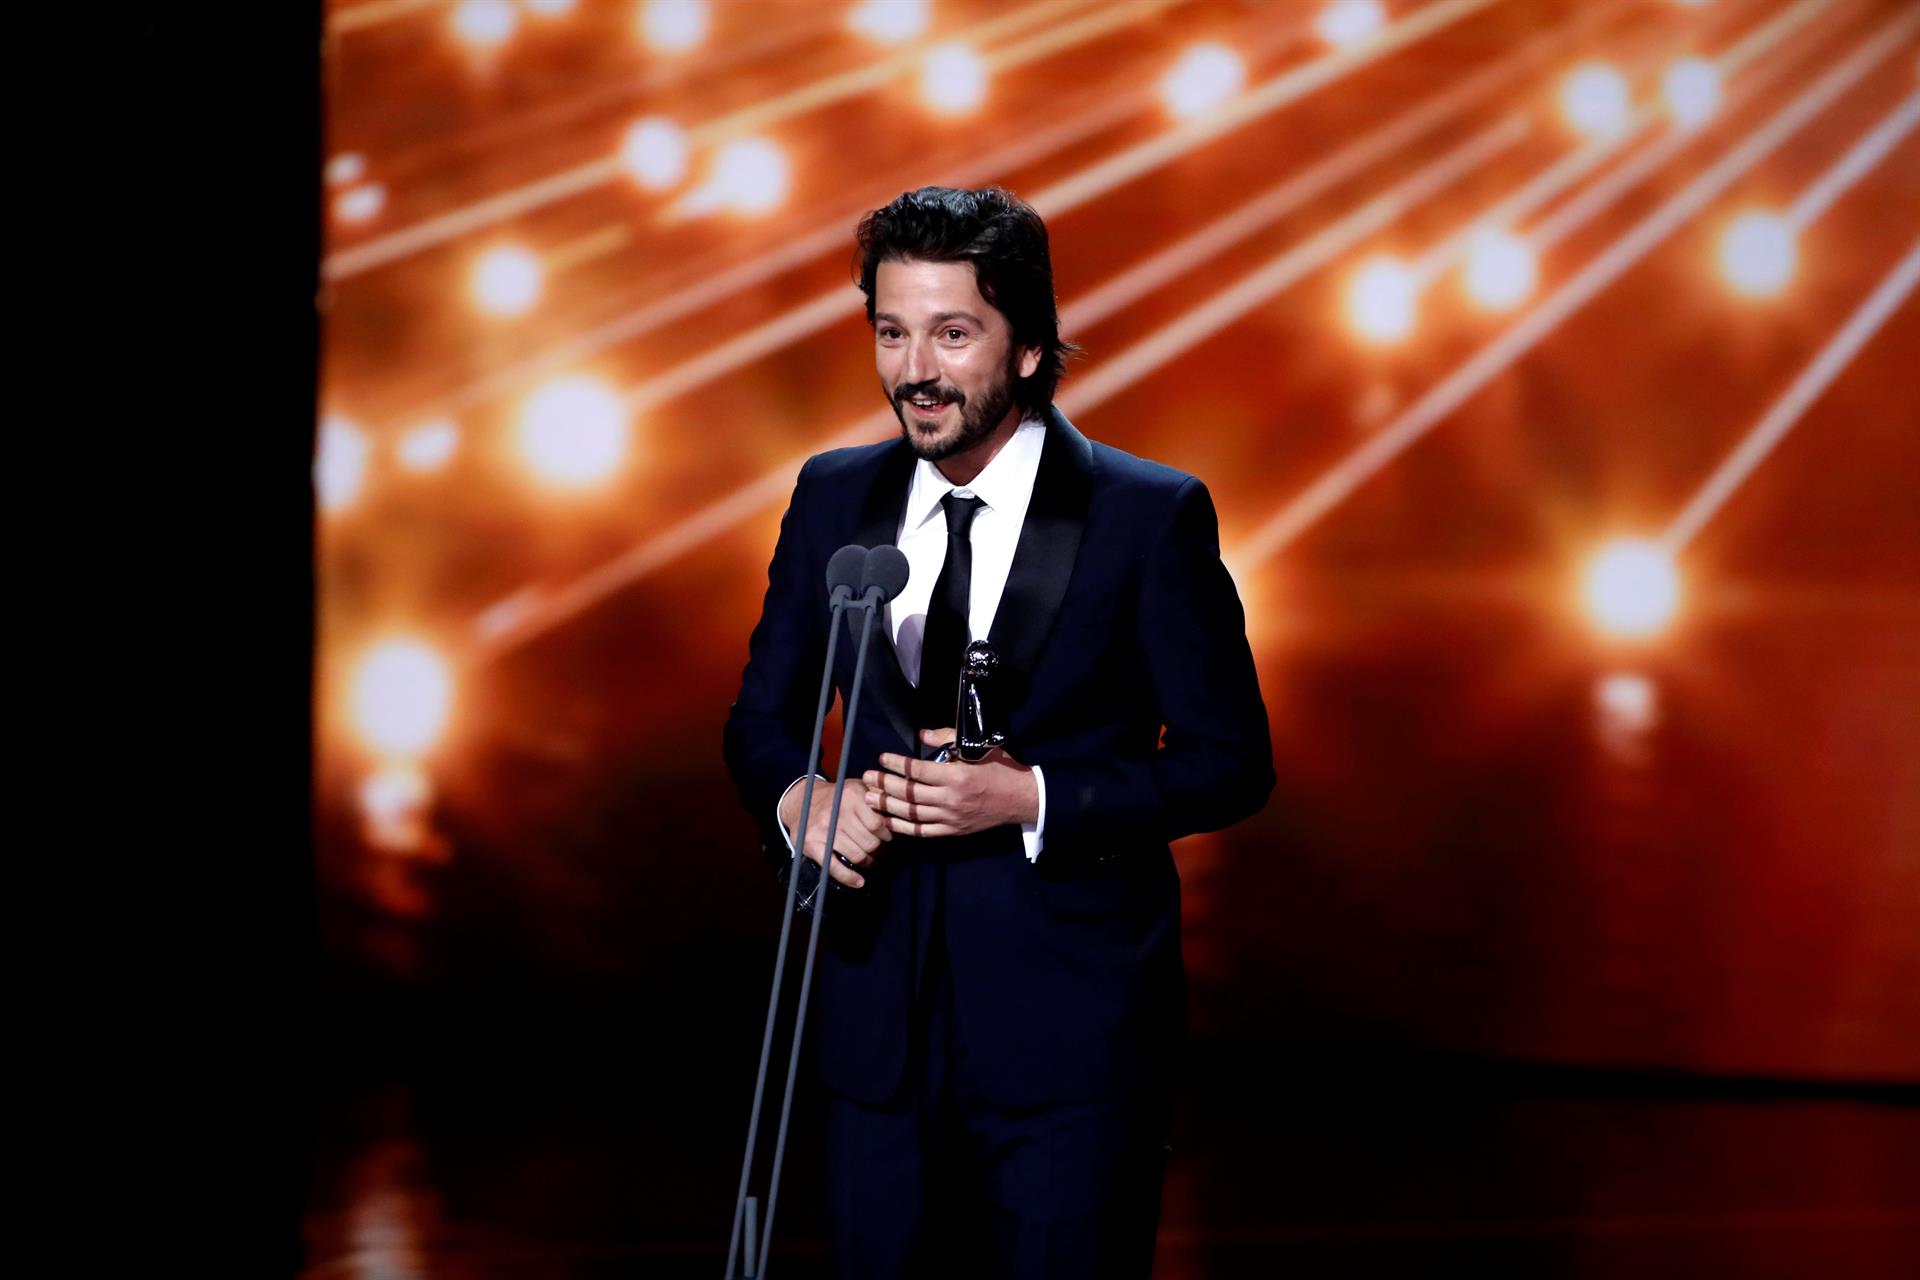 ‘¡Muchas gracias a todes!’: Diego Luna usa lenguaje inclusivo tras ganar en los Premios Latino